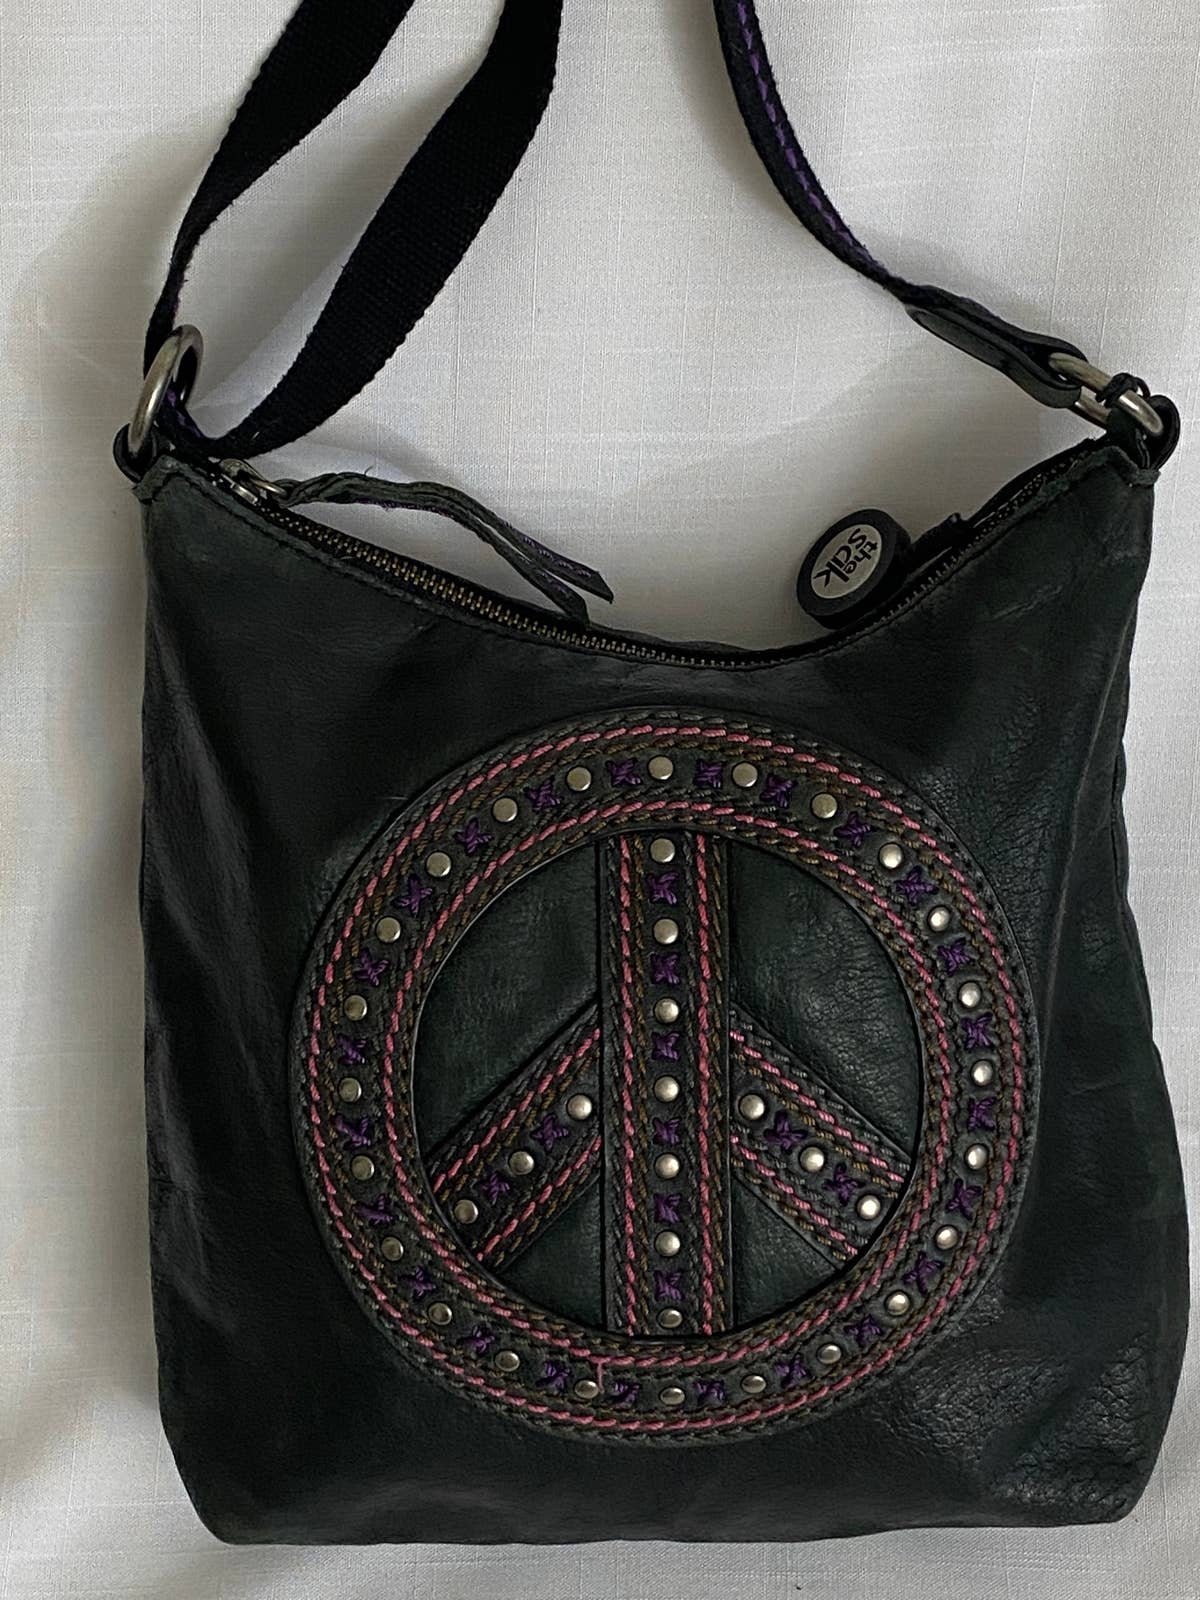 Loyola Mini Backpack | Convertible Mini Leather Backpack – The Sak